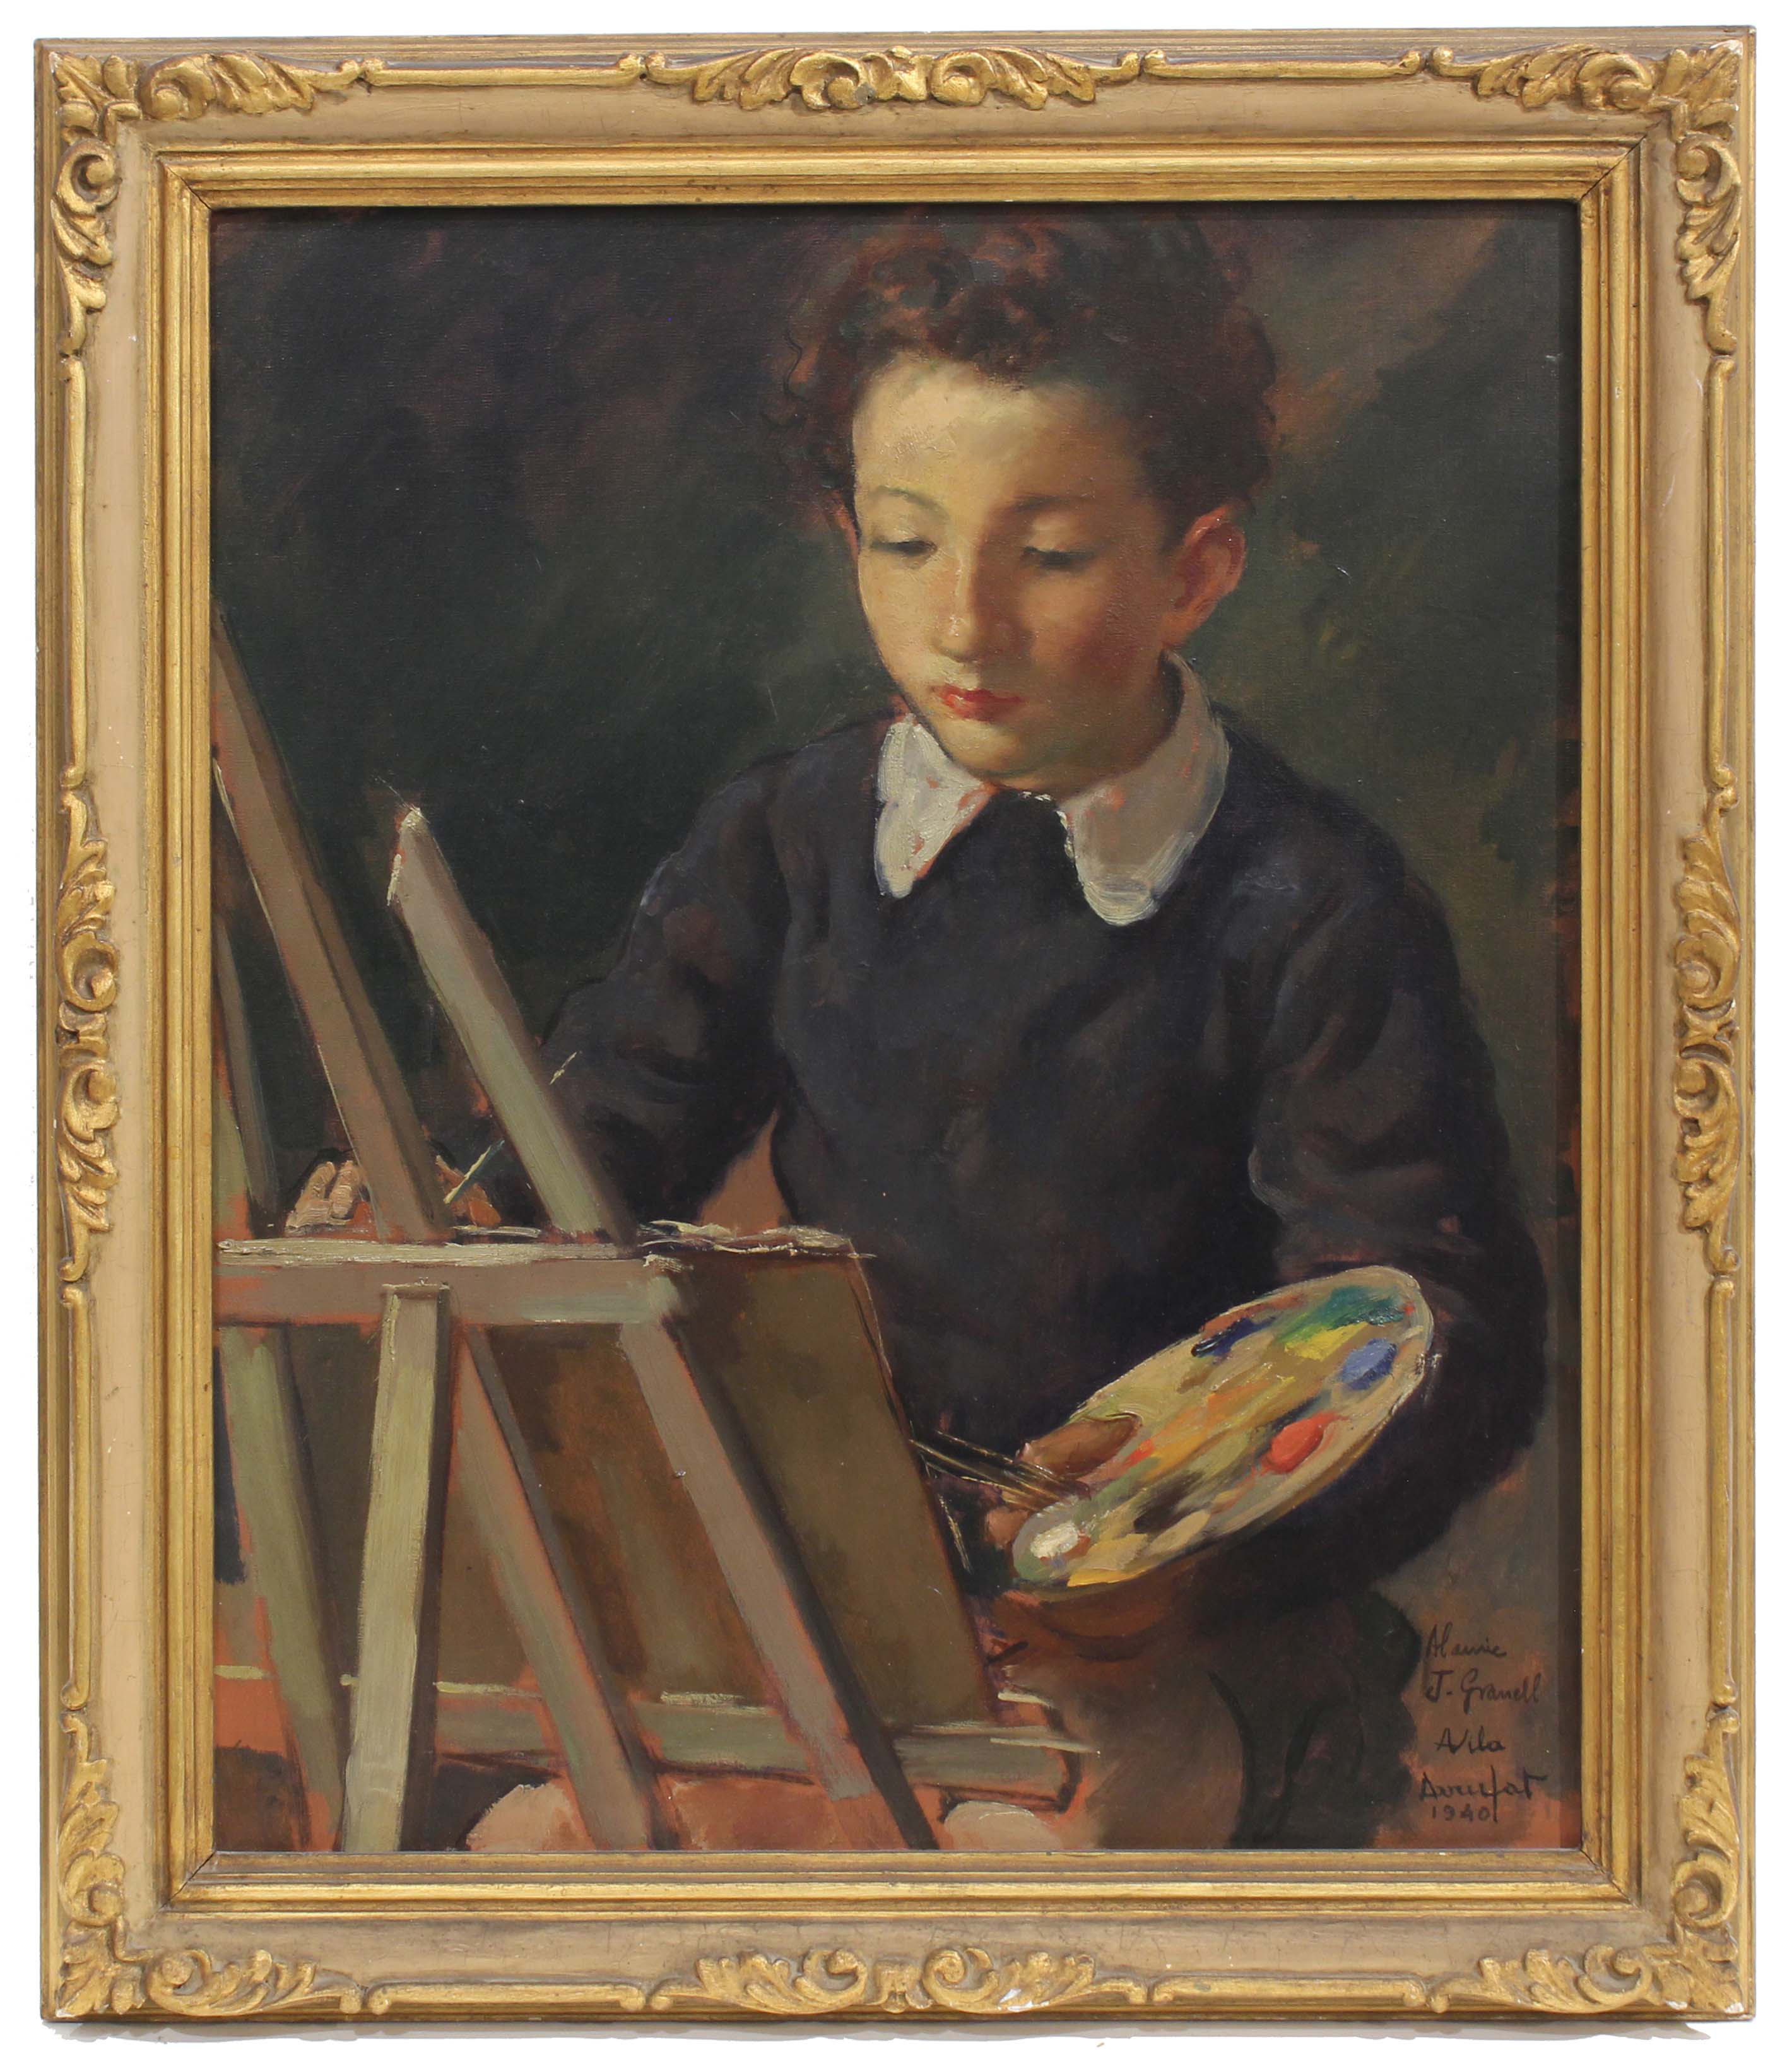 ANTONI VILA ARRUFAT (1896-1989). "EL PEQUEÑO ARTISTA", 1940